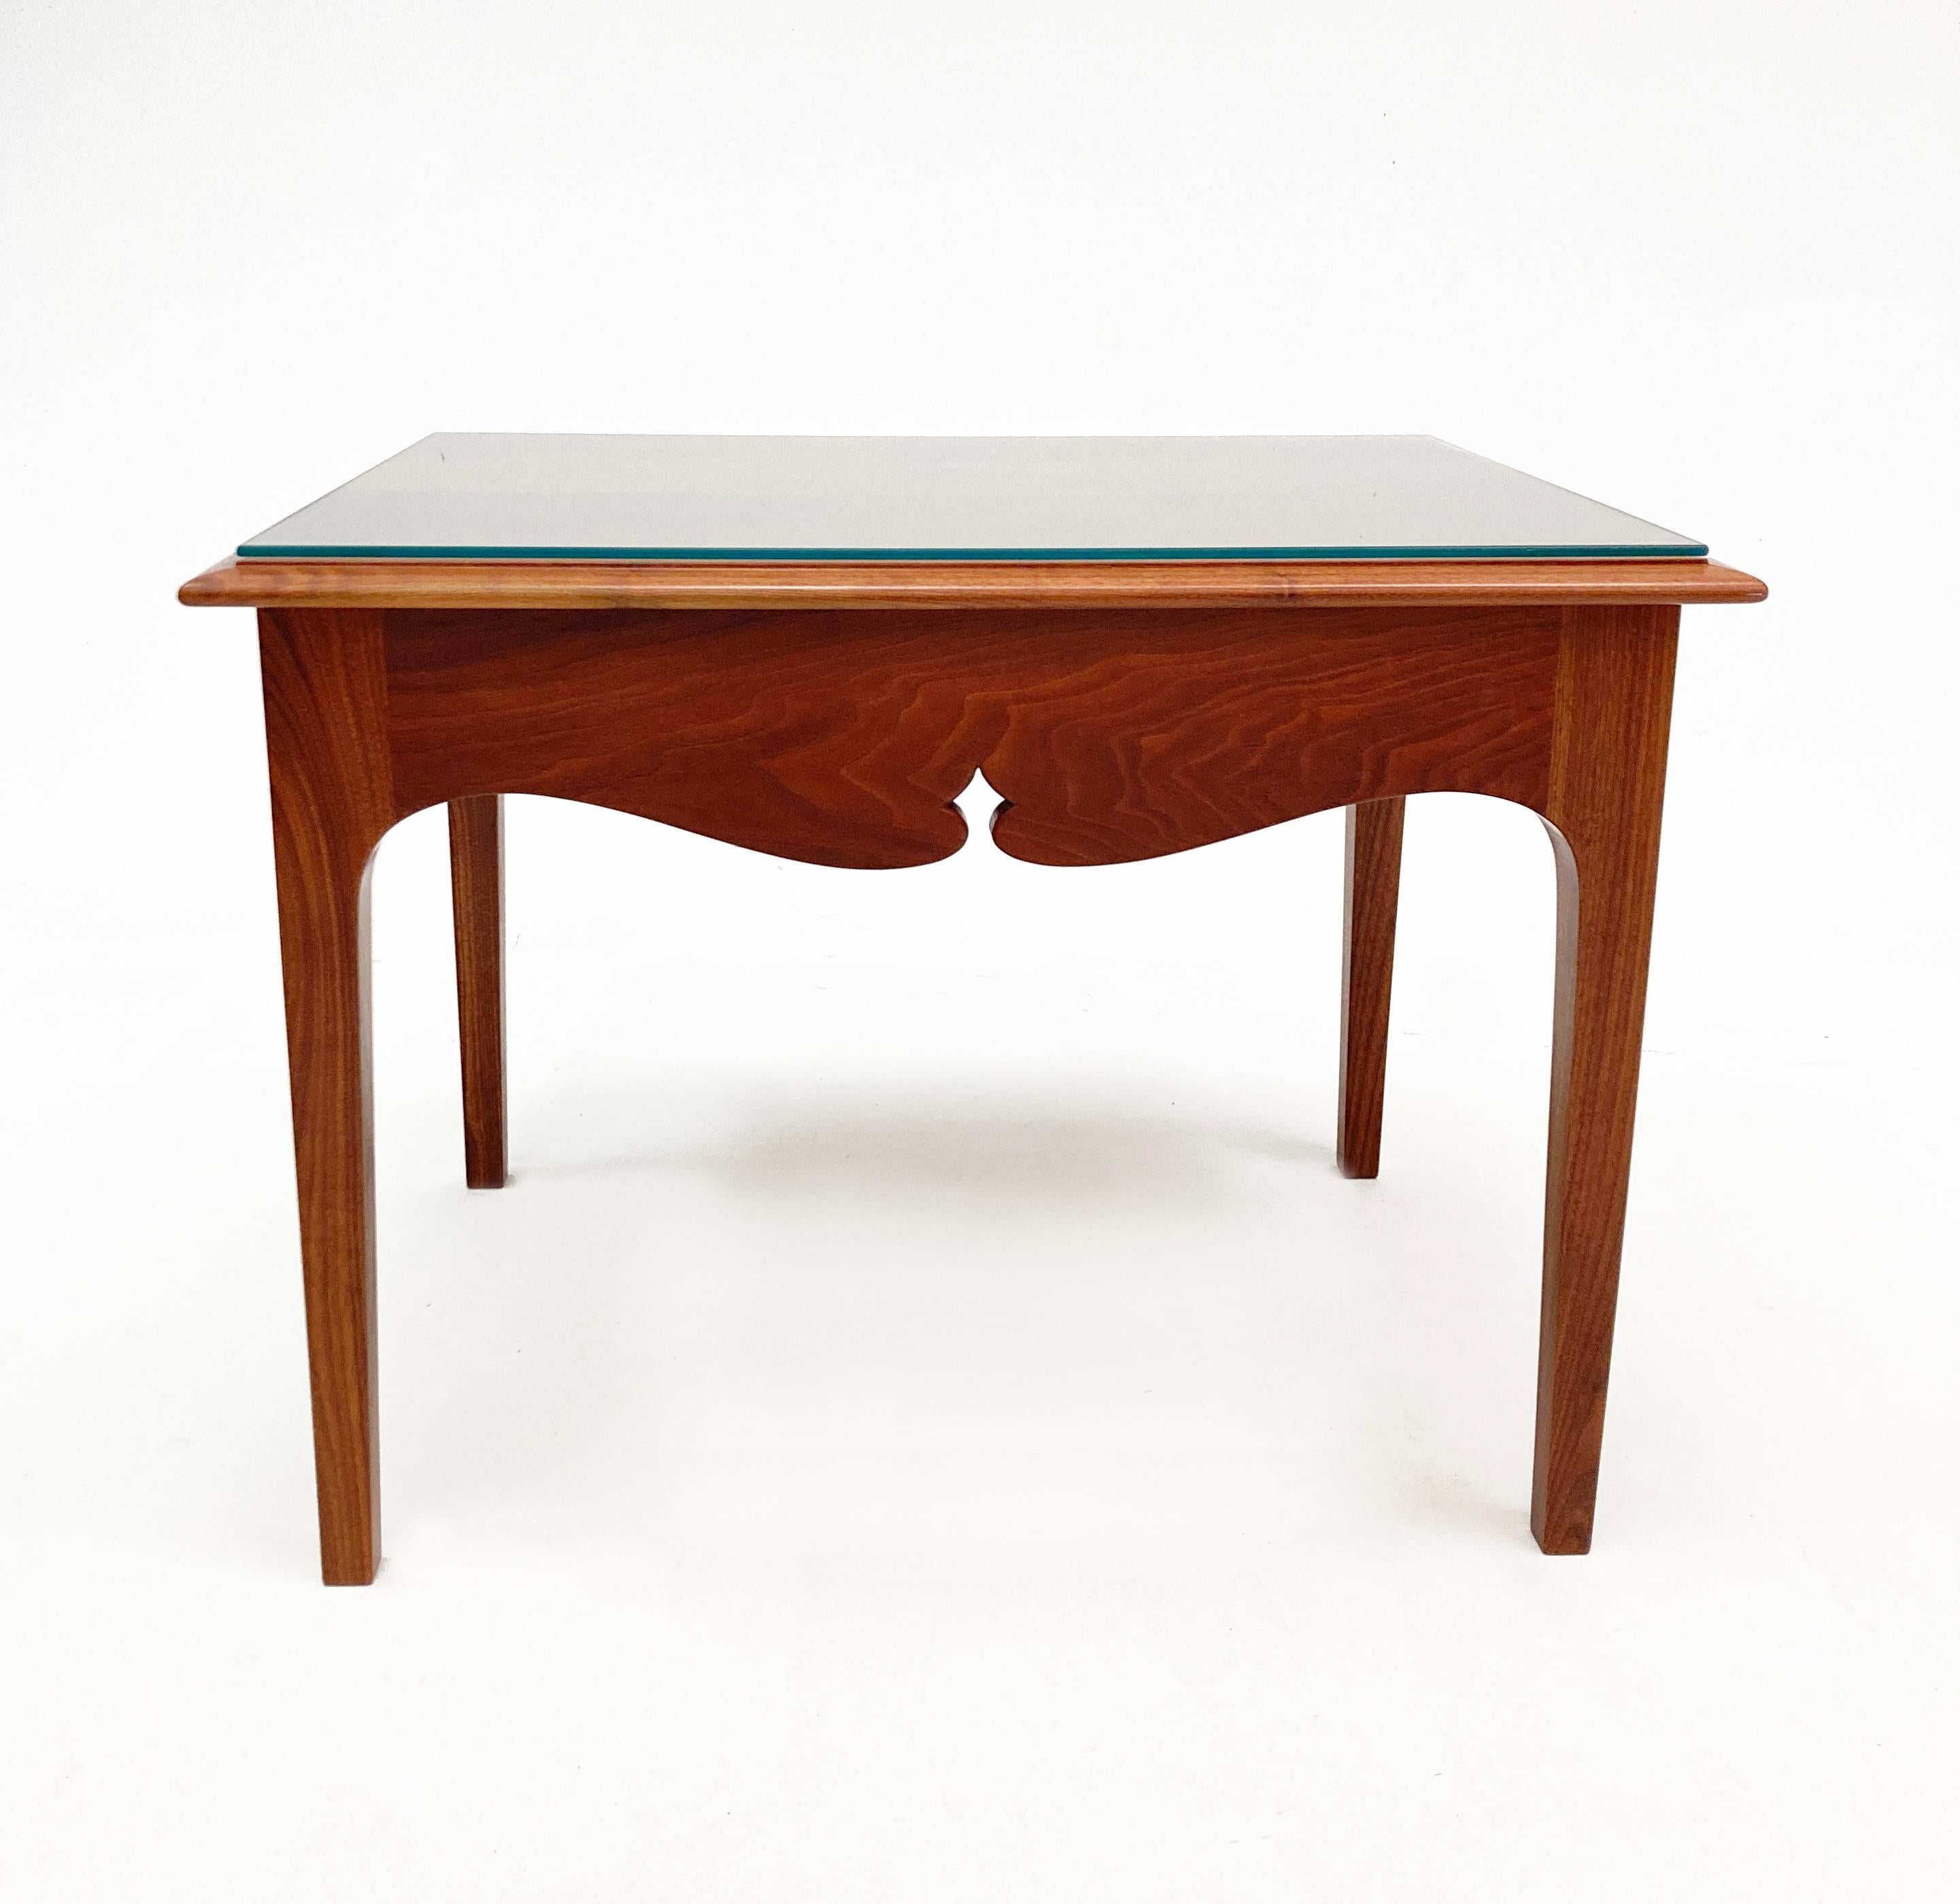 Dieser atemberaubende, handgefertigte Nussbaumtisch aus Kentucky ist vielleicht das am perfektesten verarbeitete Möbelstück, das uns je unter die Finger gekommen ist. Jeder Zentimeter, ob sichtbar oder nicht, ist wunderschön und tadellos verarbeitet